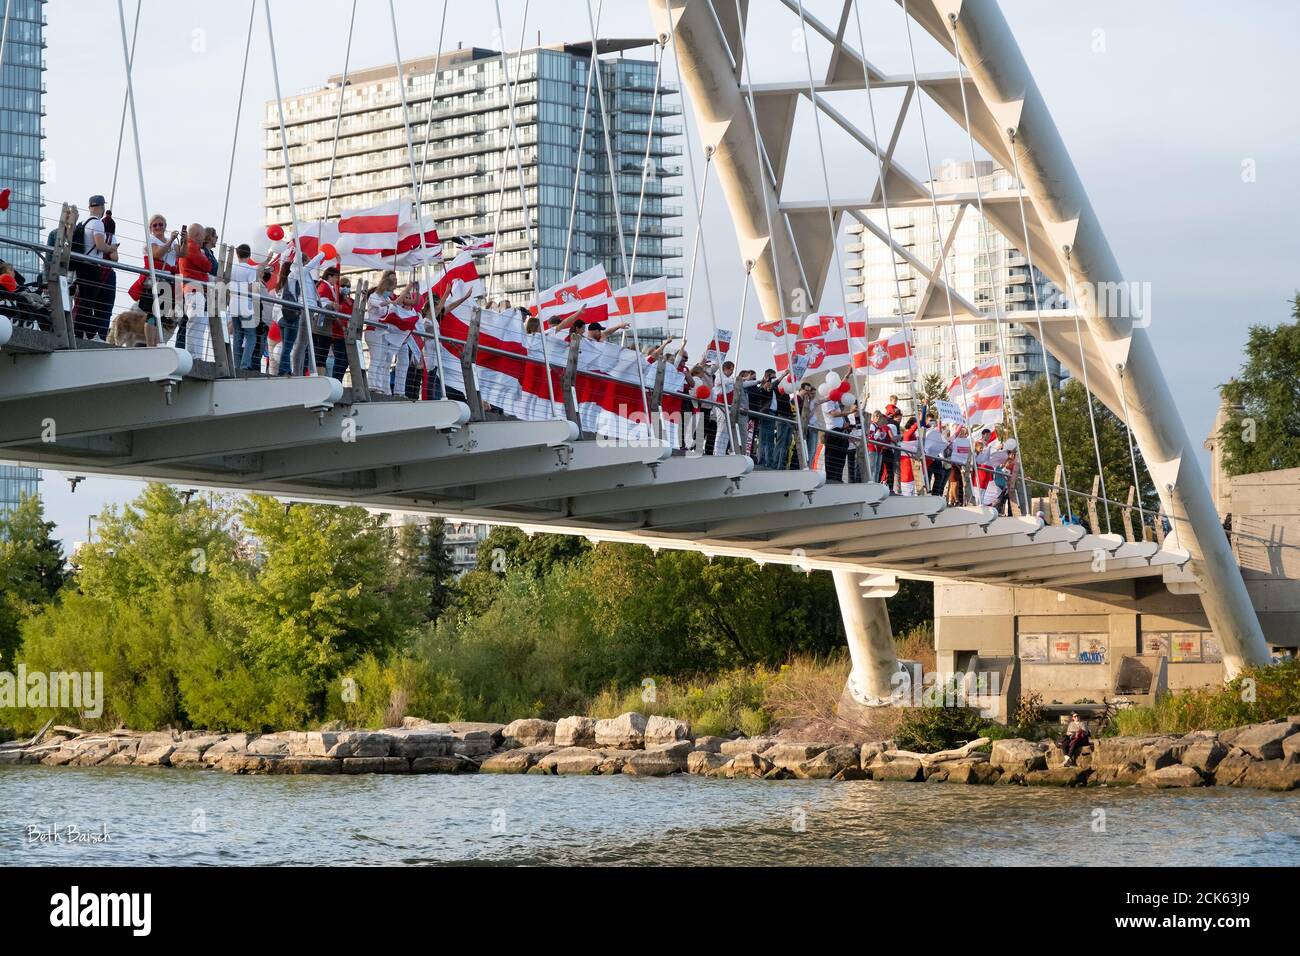 Les manifestants se rassemblent sur le pont Humber Bay Arch à Toronto, en Ontario, pour se tenir en solidarité avec la population du Bélarus à la suite d'élections frauduleuses. Banque D'Images